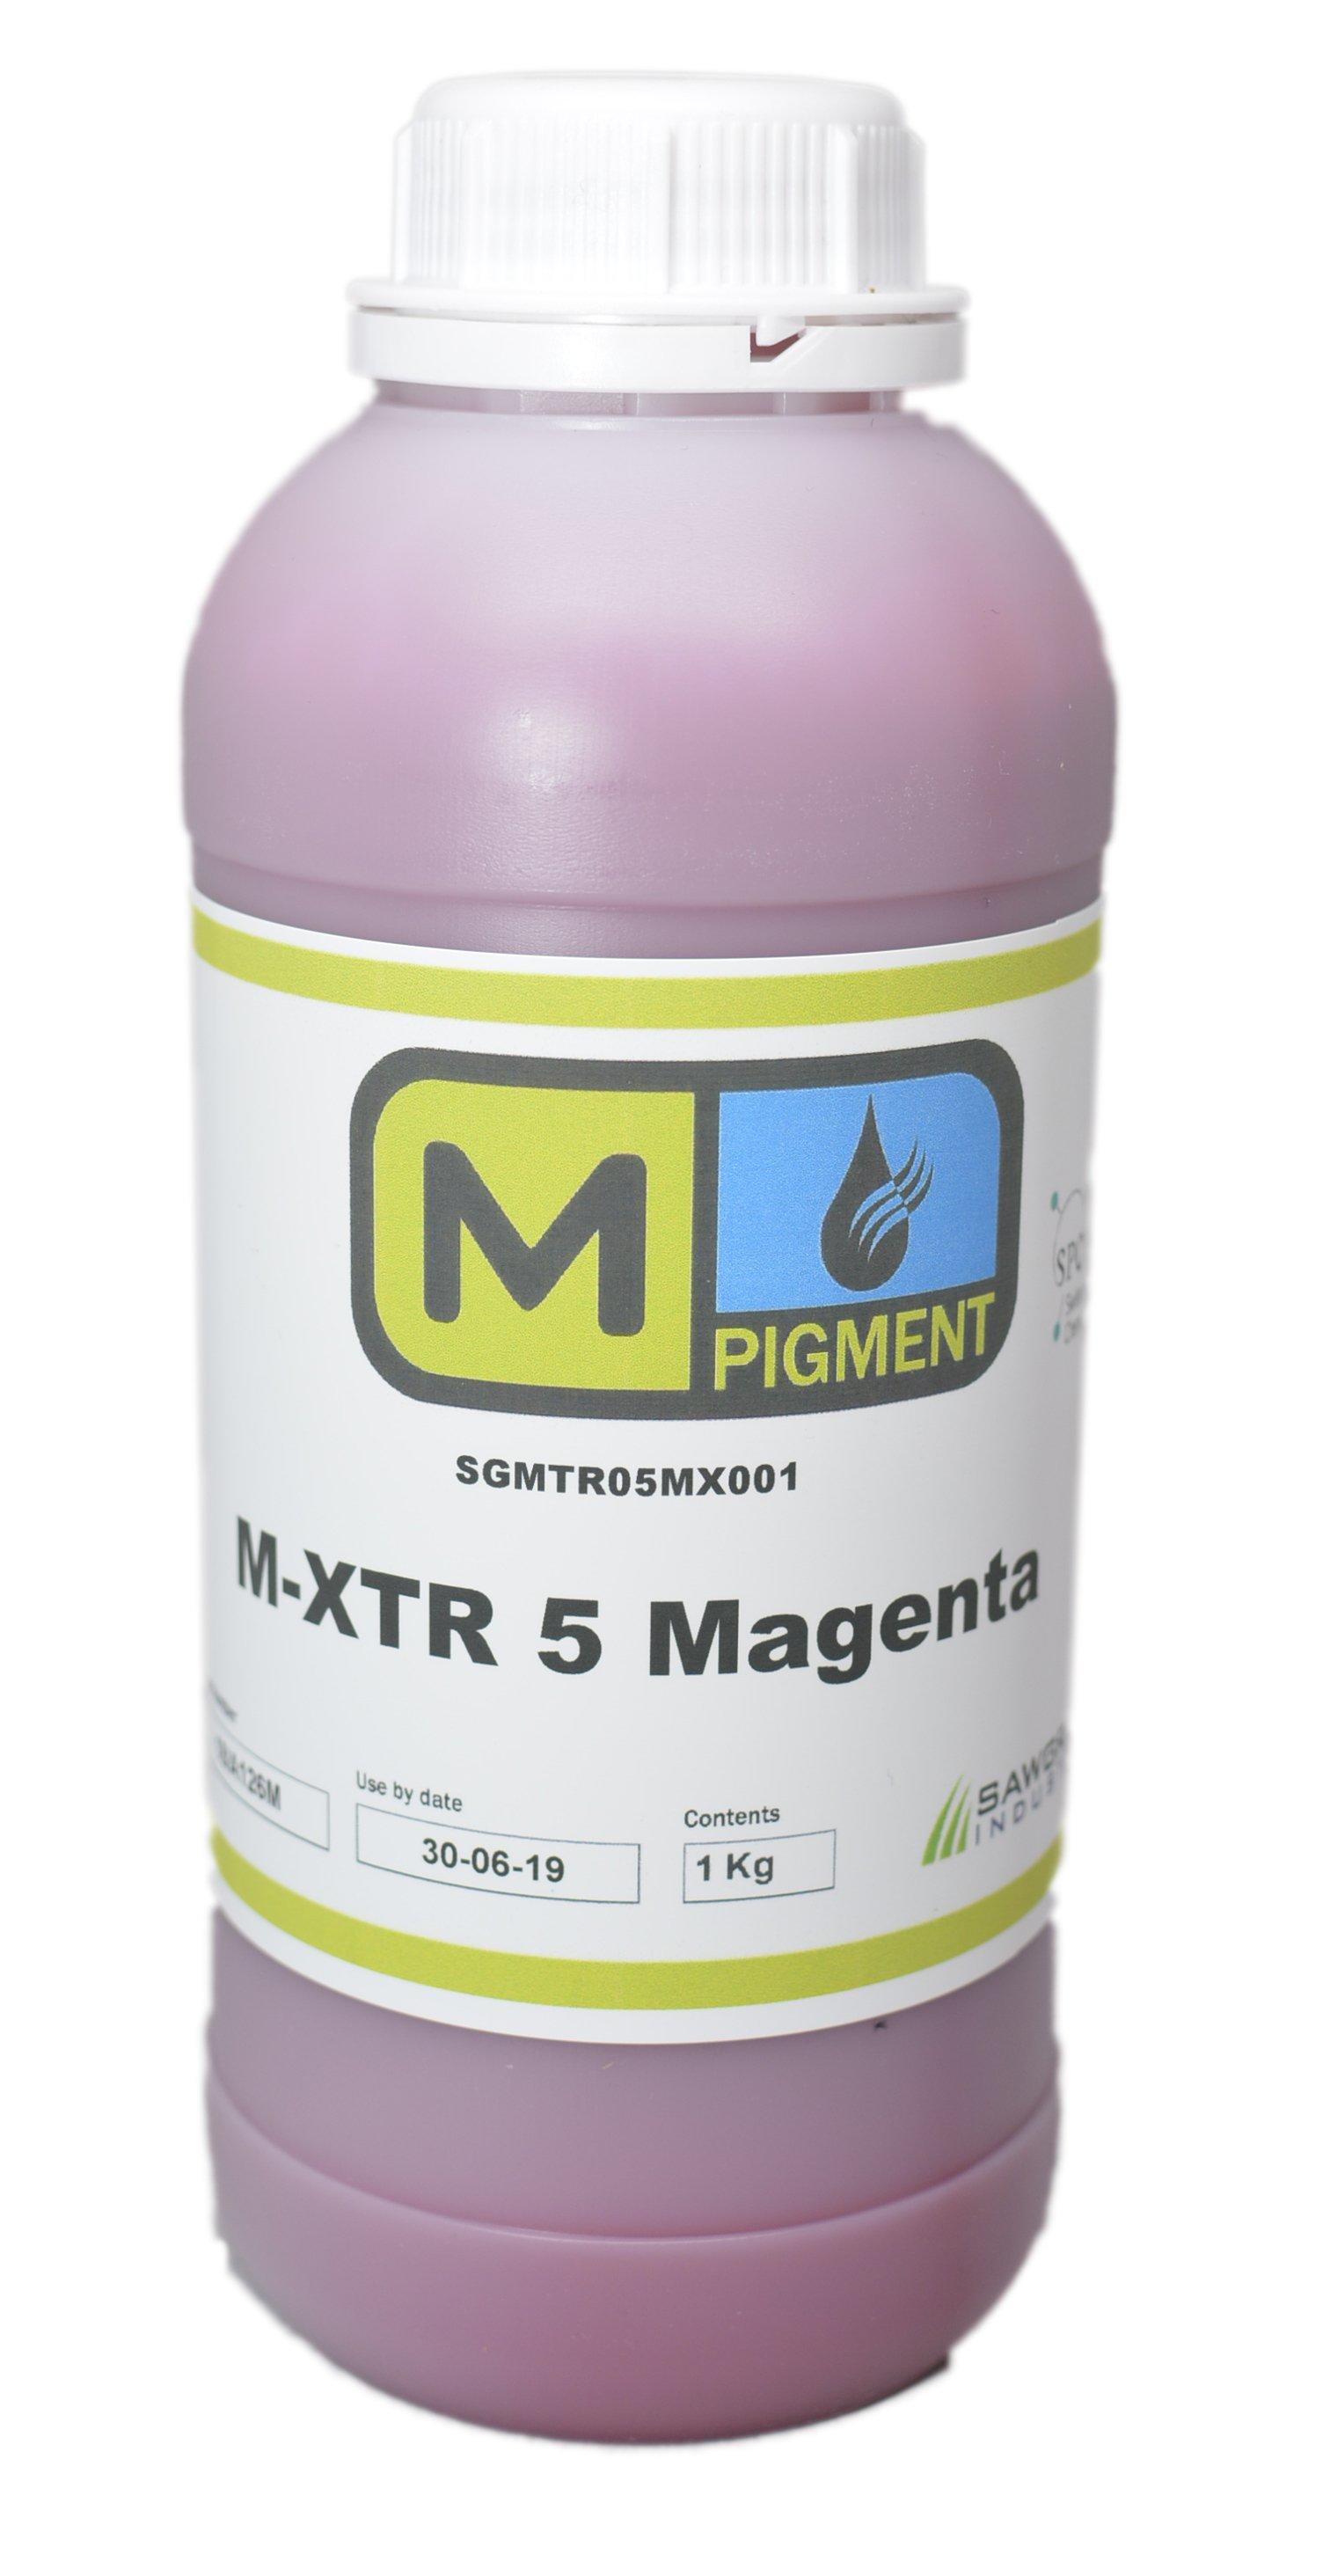 M-XTR5 Magenta Pigment Textile ink for Epson printheads DX4-DX7 - Rainbowjet Digital